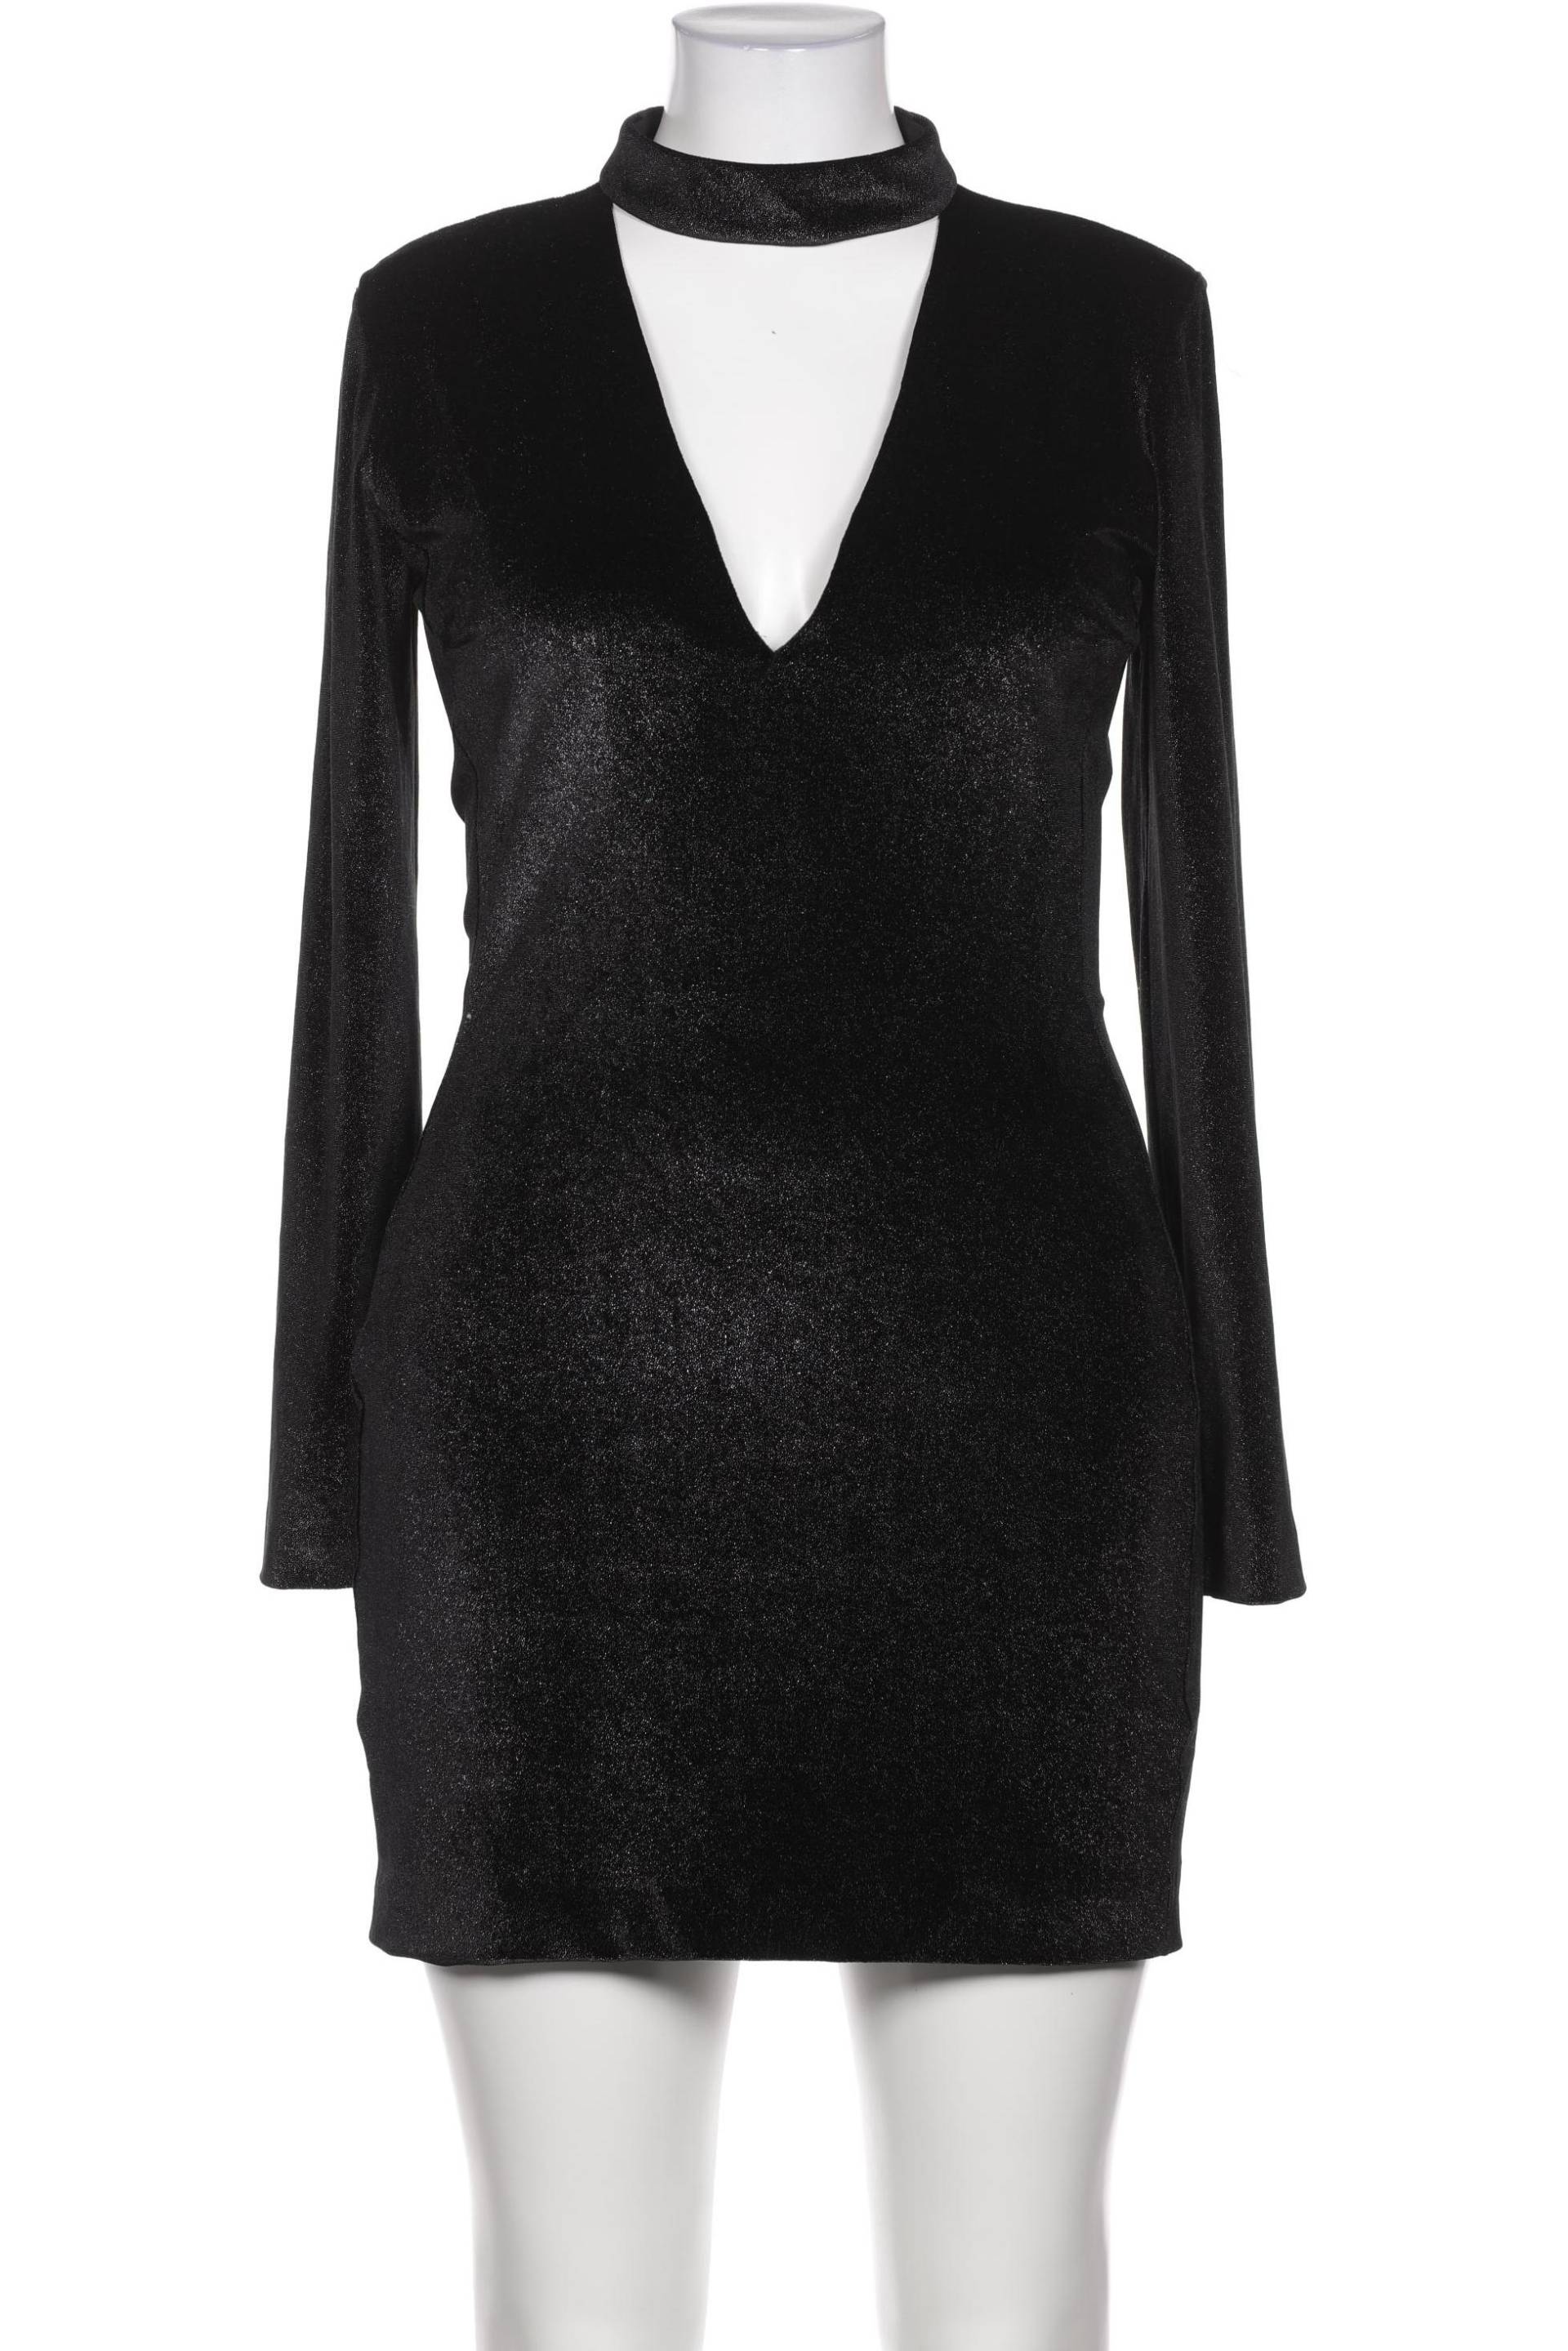 Just Cavalli Damen Kleid, schwarz, Gr. 44 von Just Cavalli